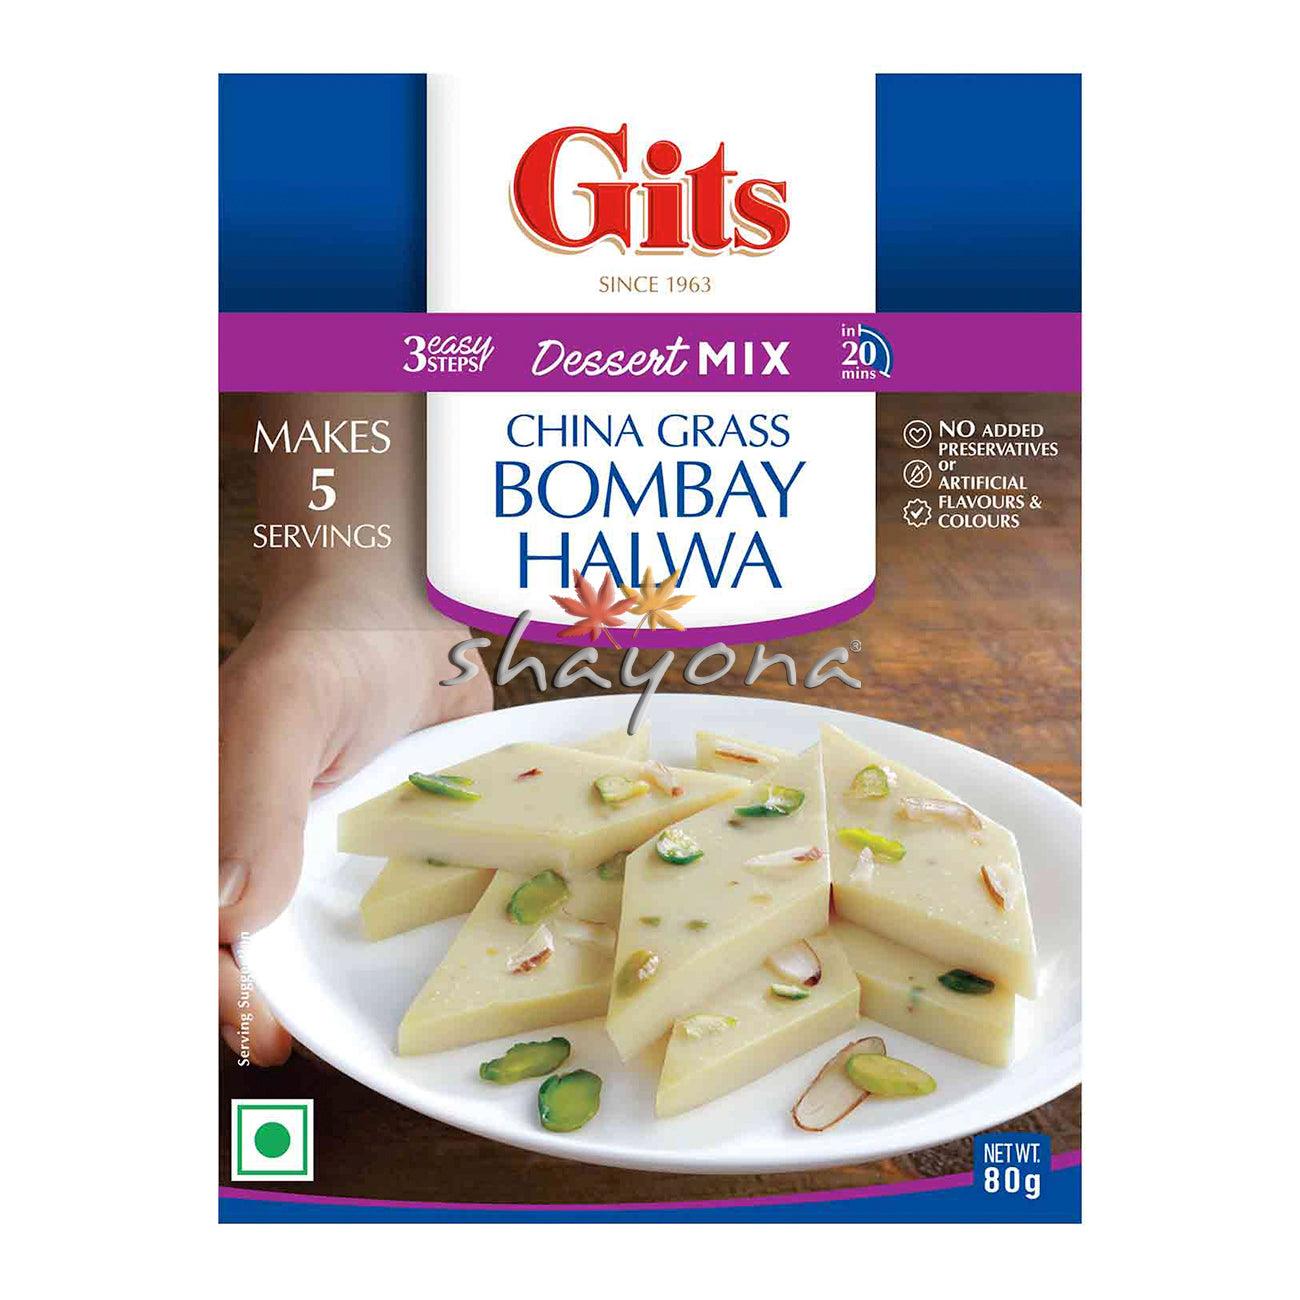 Gits Bombay Halwa - Shayona UK